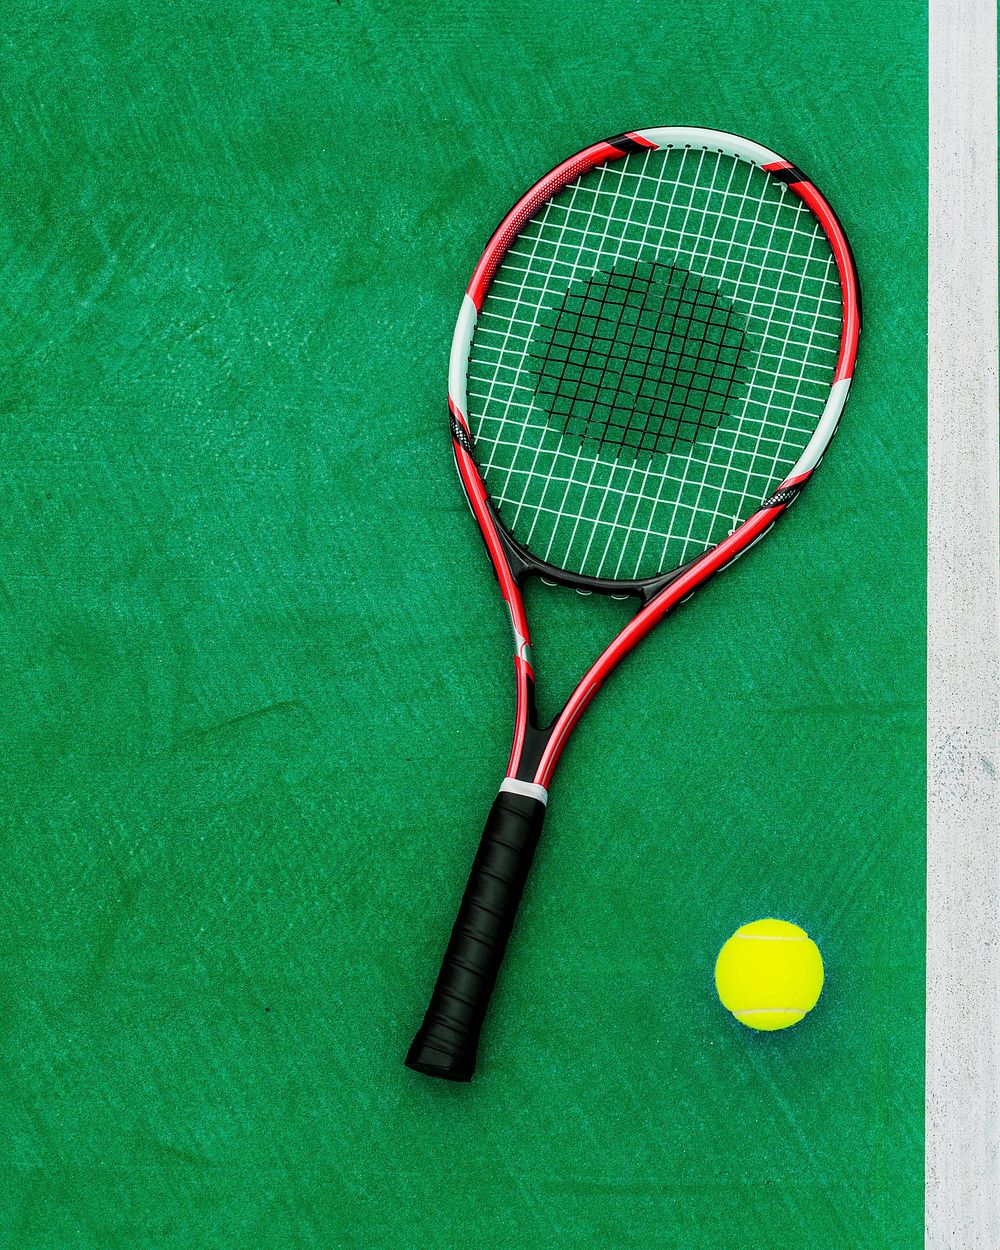 Racket Tennis Ball Sport Equipment Concept